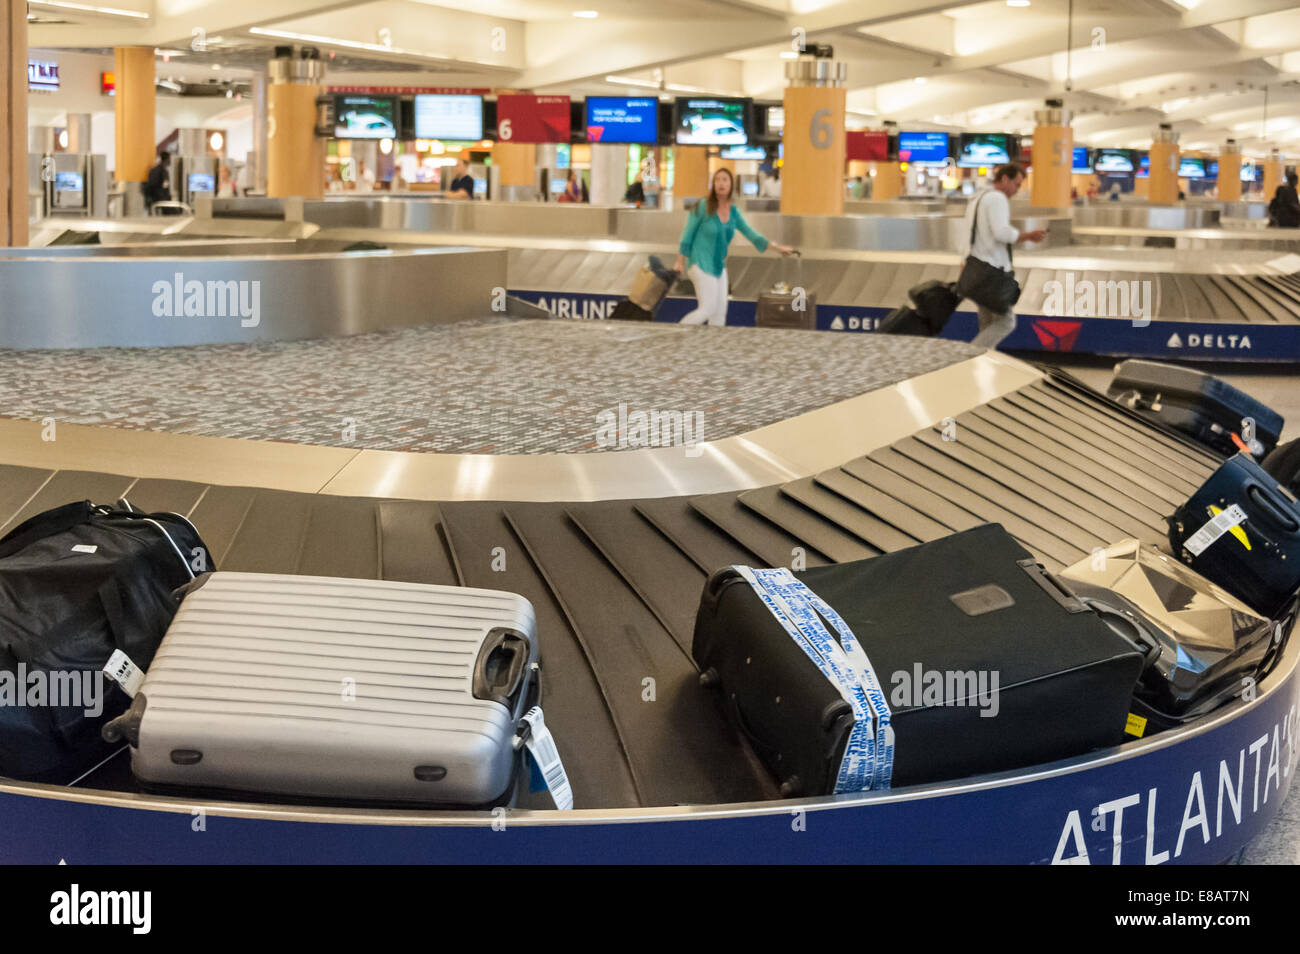 Carrousel des bagages et des passagers des compagnies aériennes à l'aéroport international Hartsfield-Jackson d'Atlanta à Atlanta, Géorgie, USA. Banque D'Images